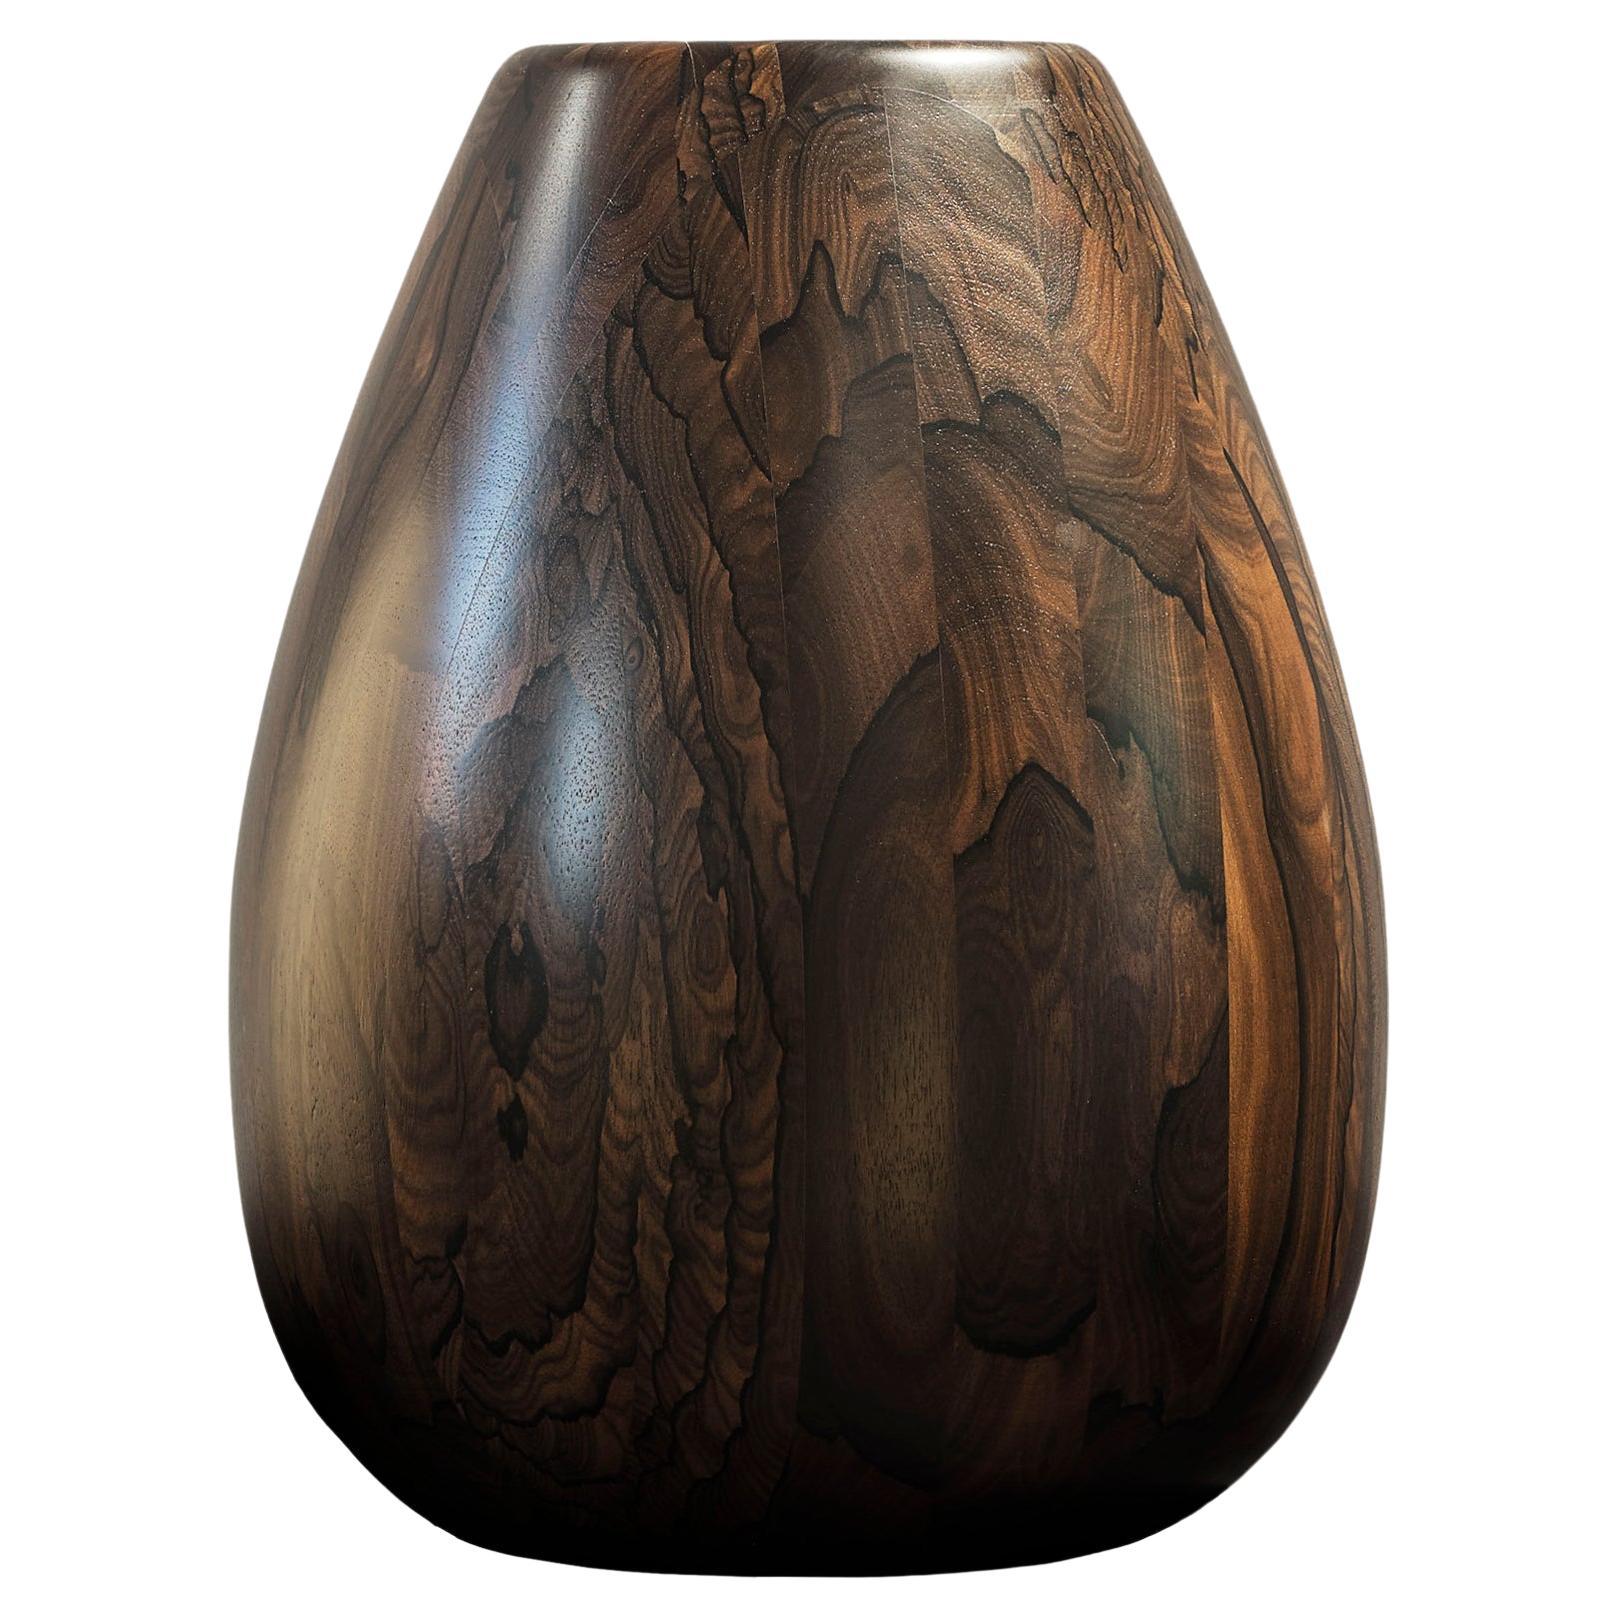 Ziricote Wood Vase h25 design Franco Albini - edit b Officina della Scala For Sale